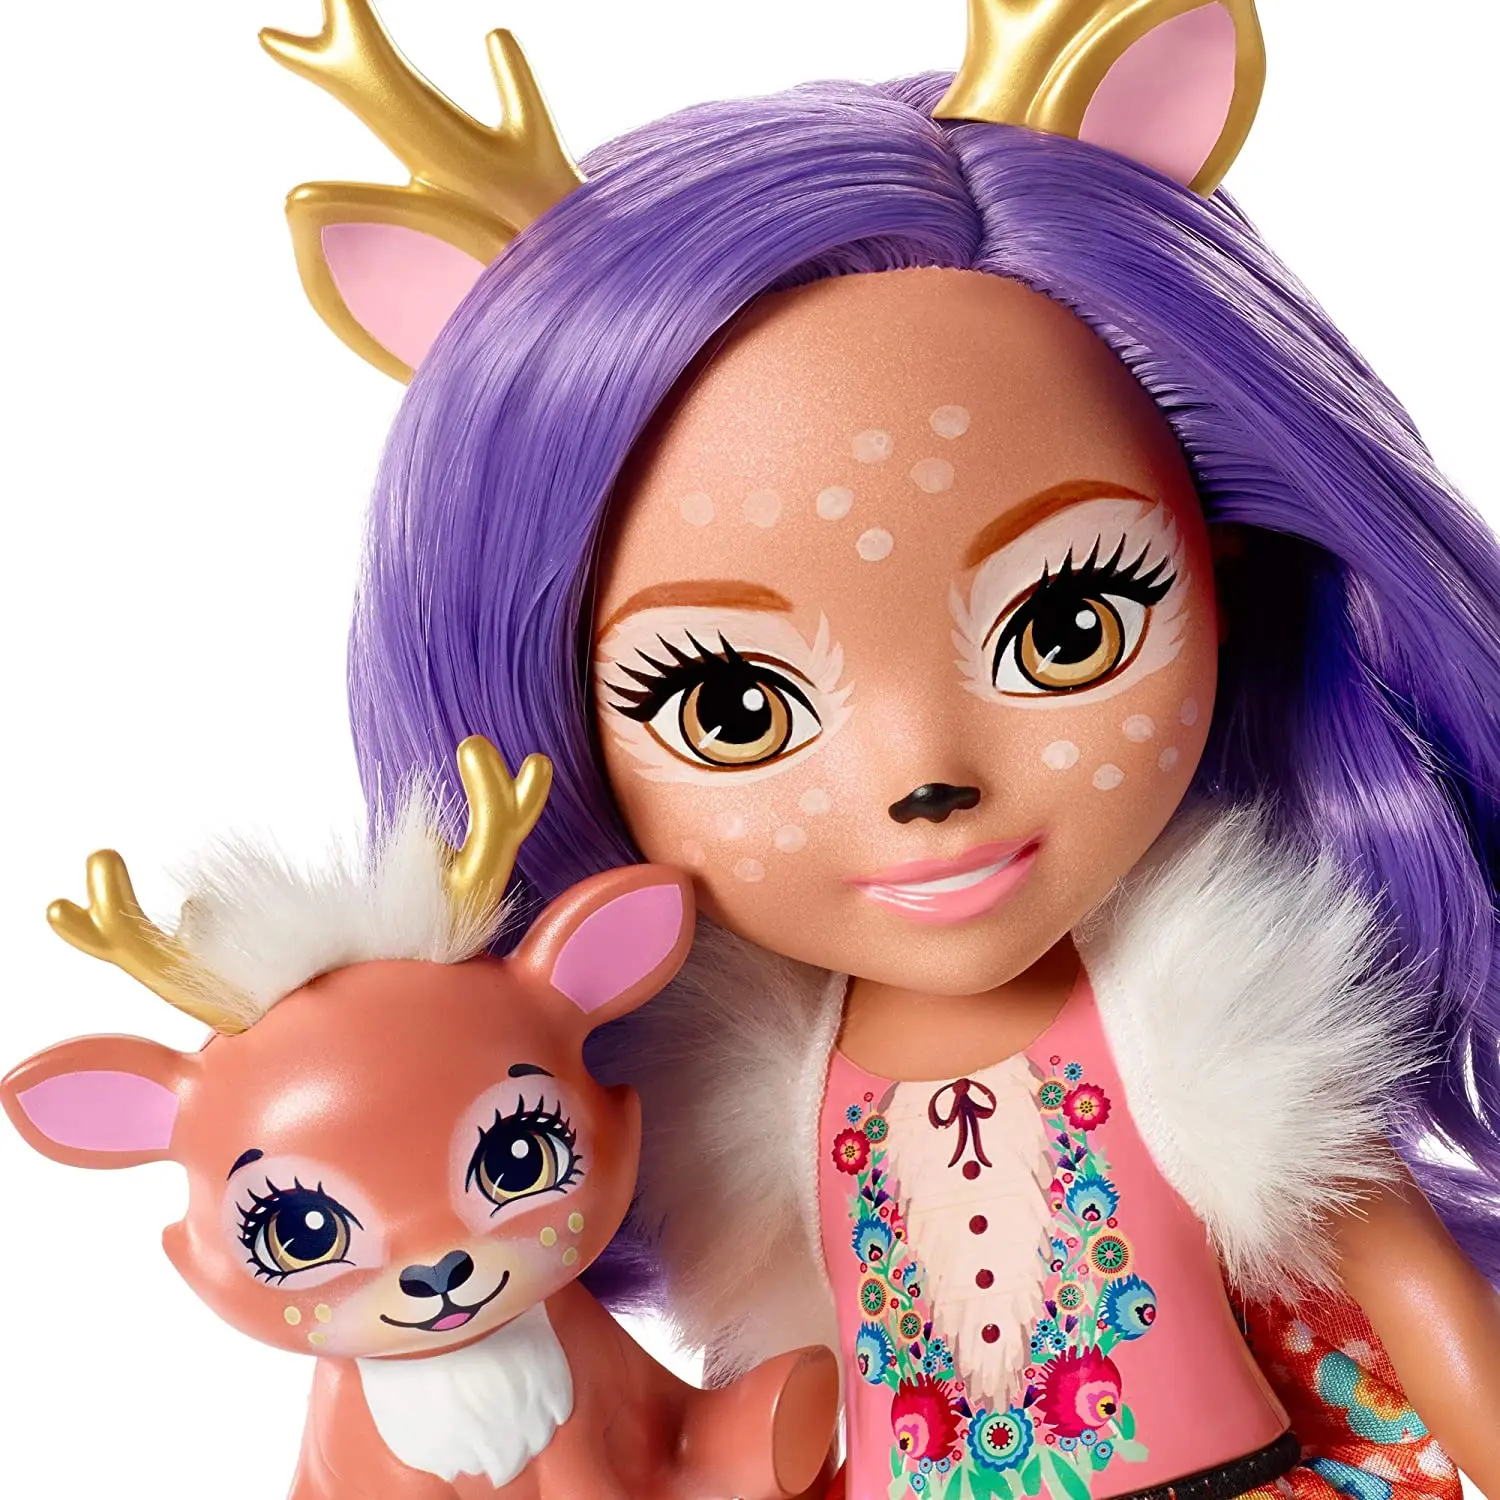 

Оригинальные куклы Enchantimals 35 см, мини-кукла и тёмник, олень данесса, детские игрушки для девочек, куклы, игровые наборы, милые животные, домашн...